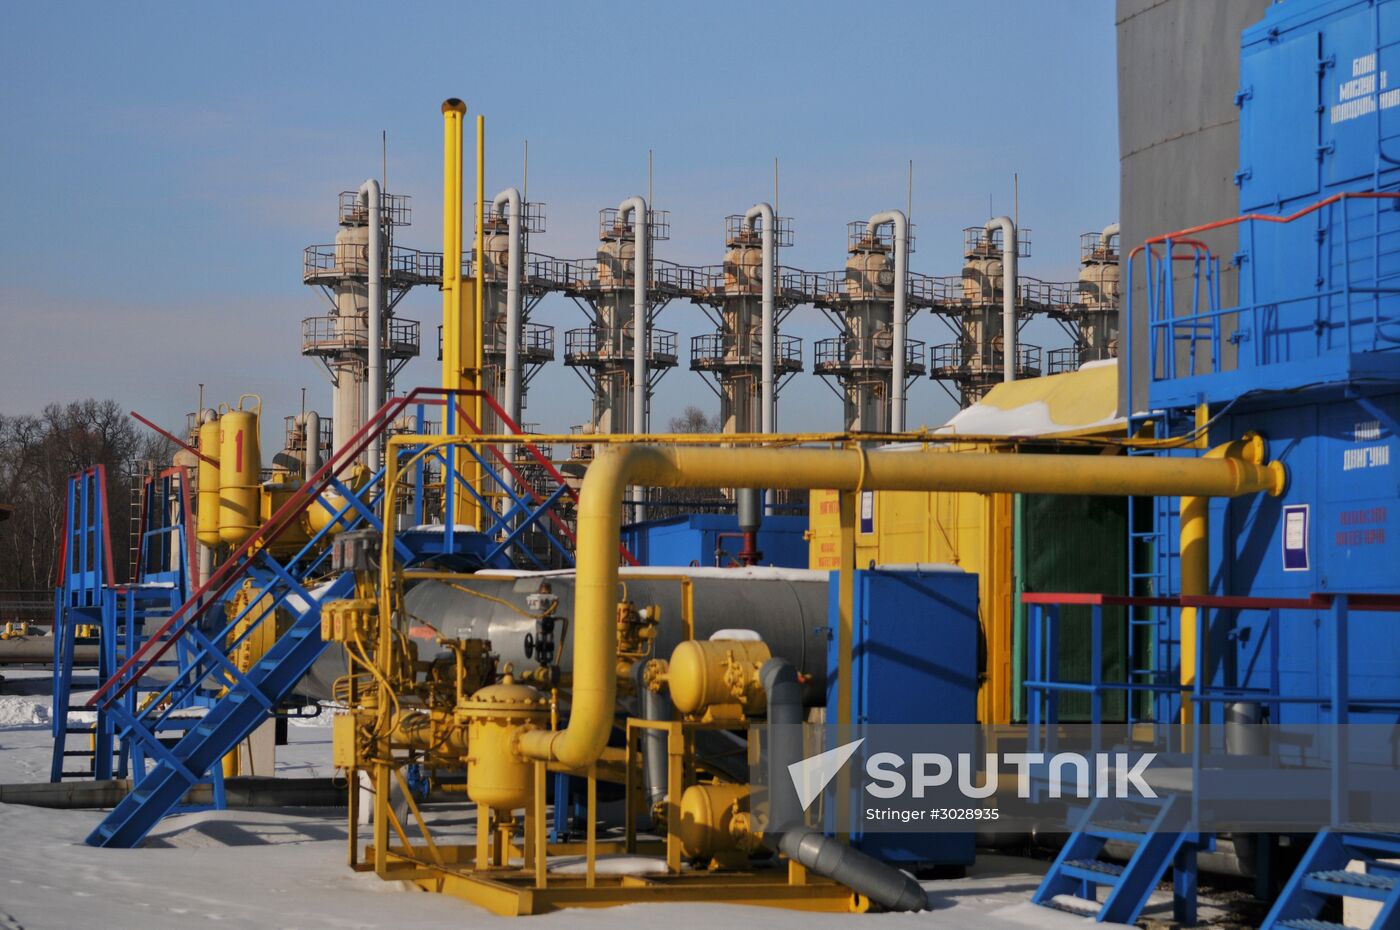 Bilche-Volytsko-Uherske underground gas storage facility in Ukraine